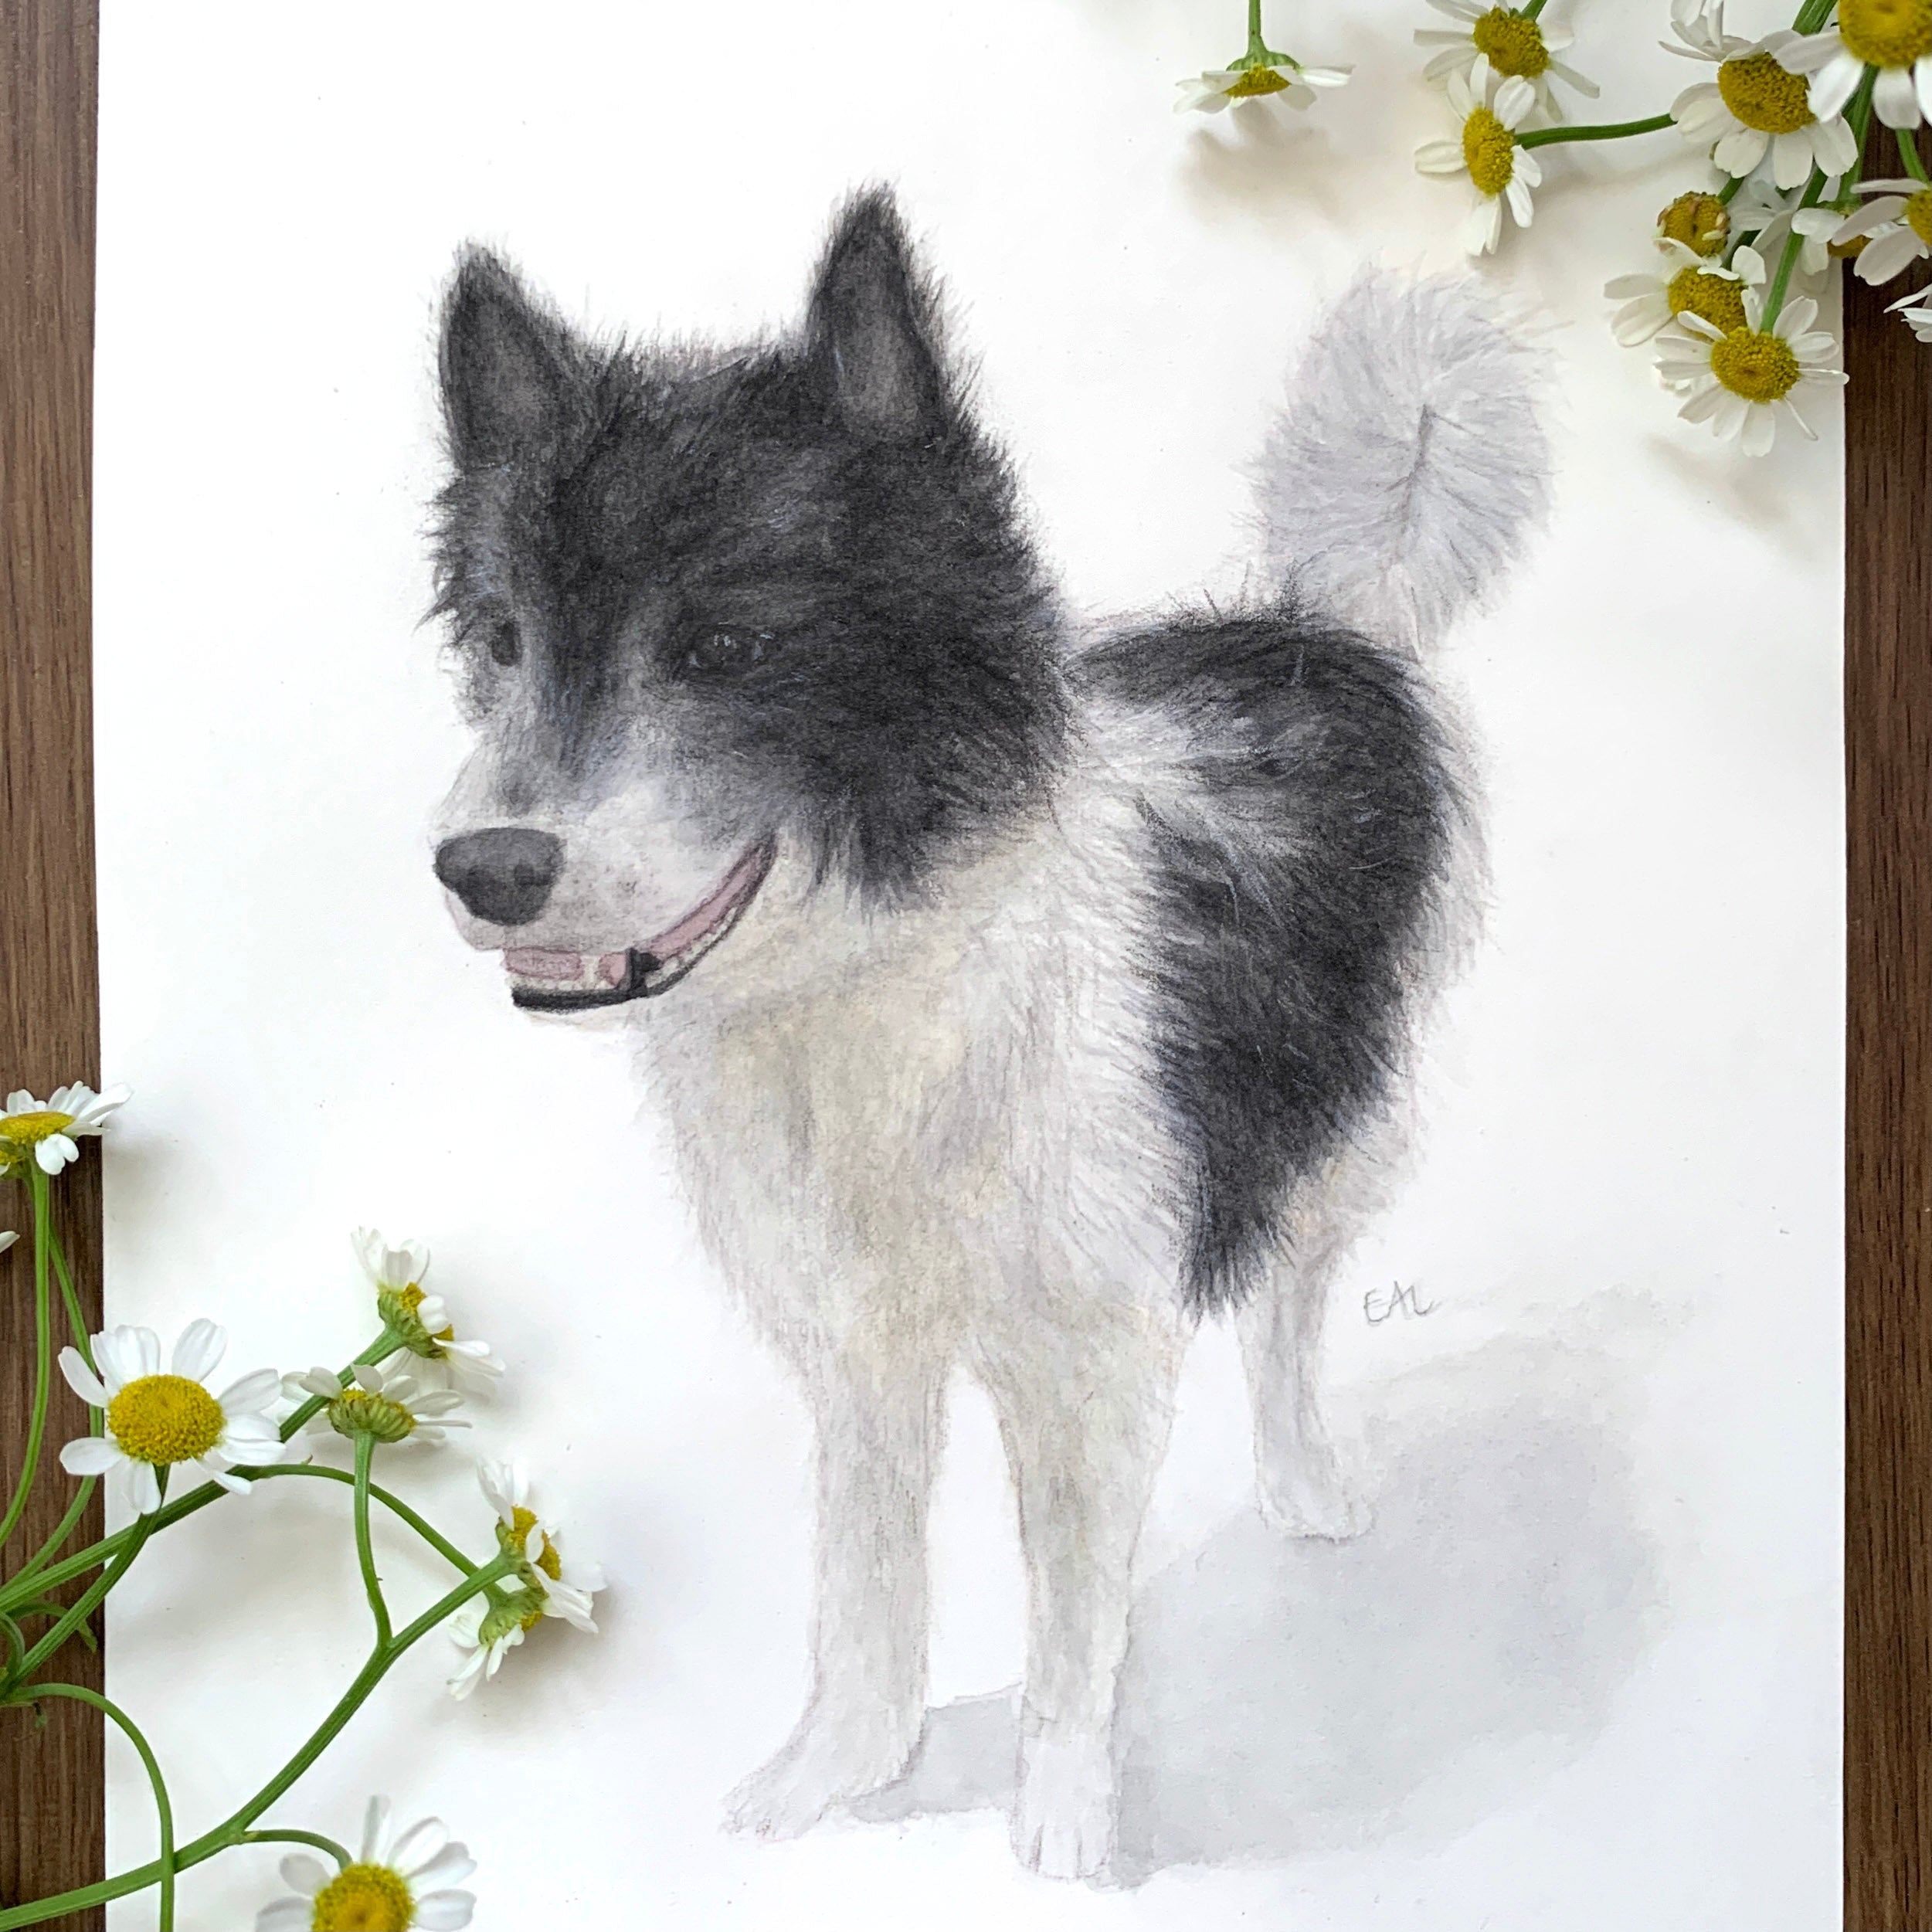 Watercolour pet portrait painting commissions